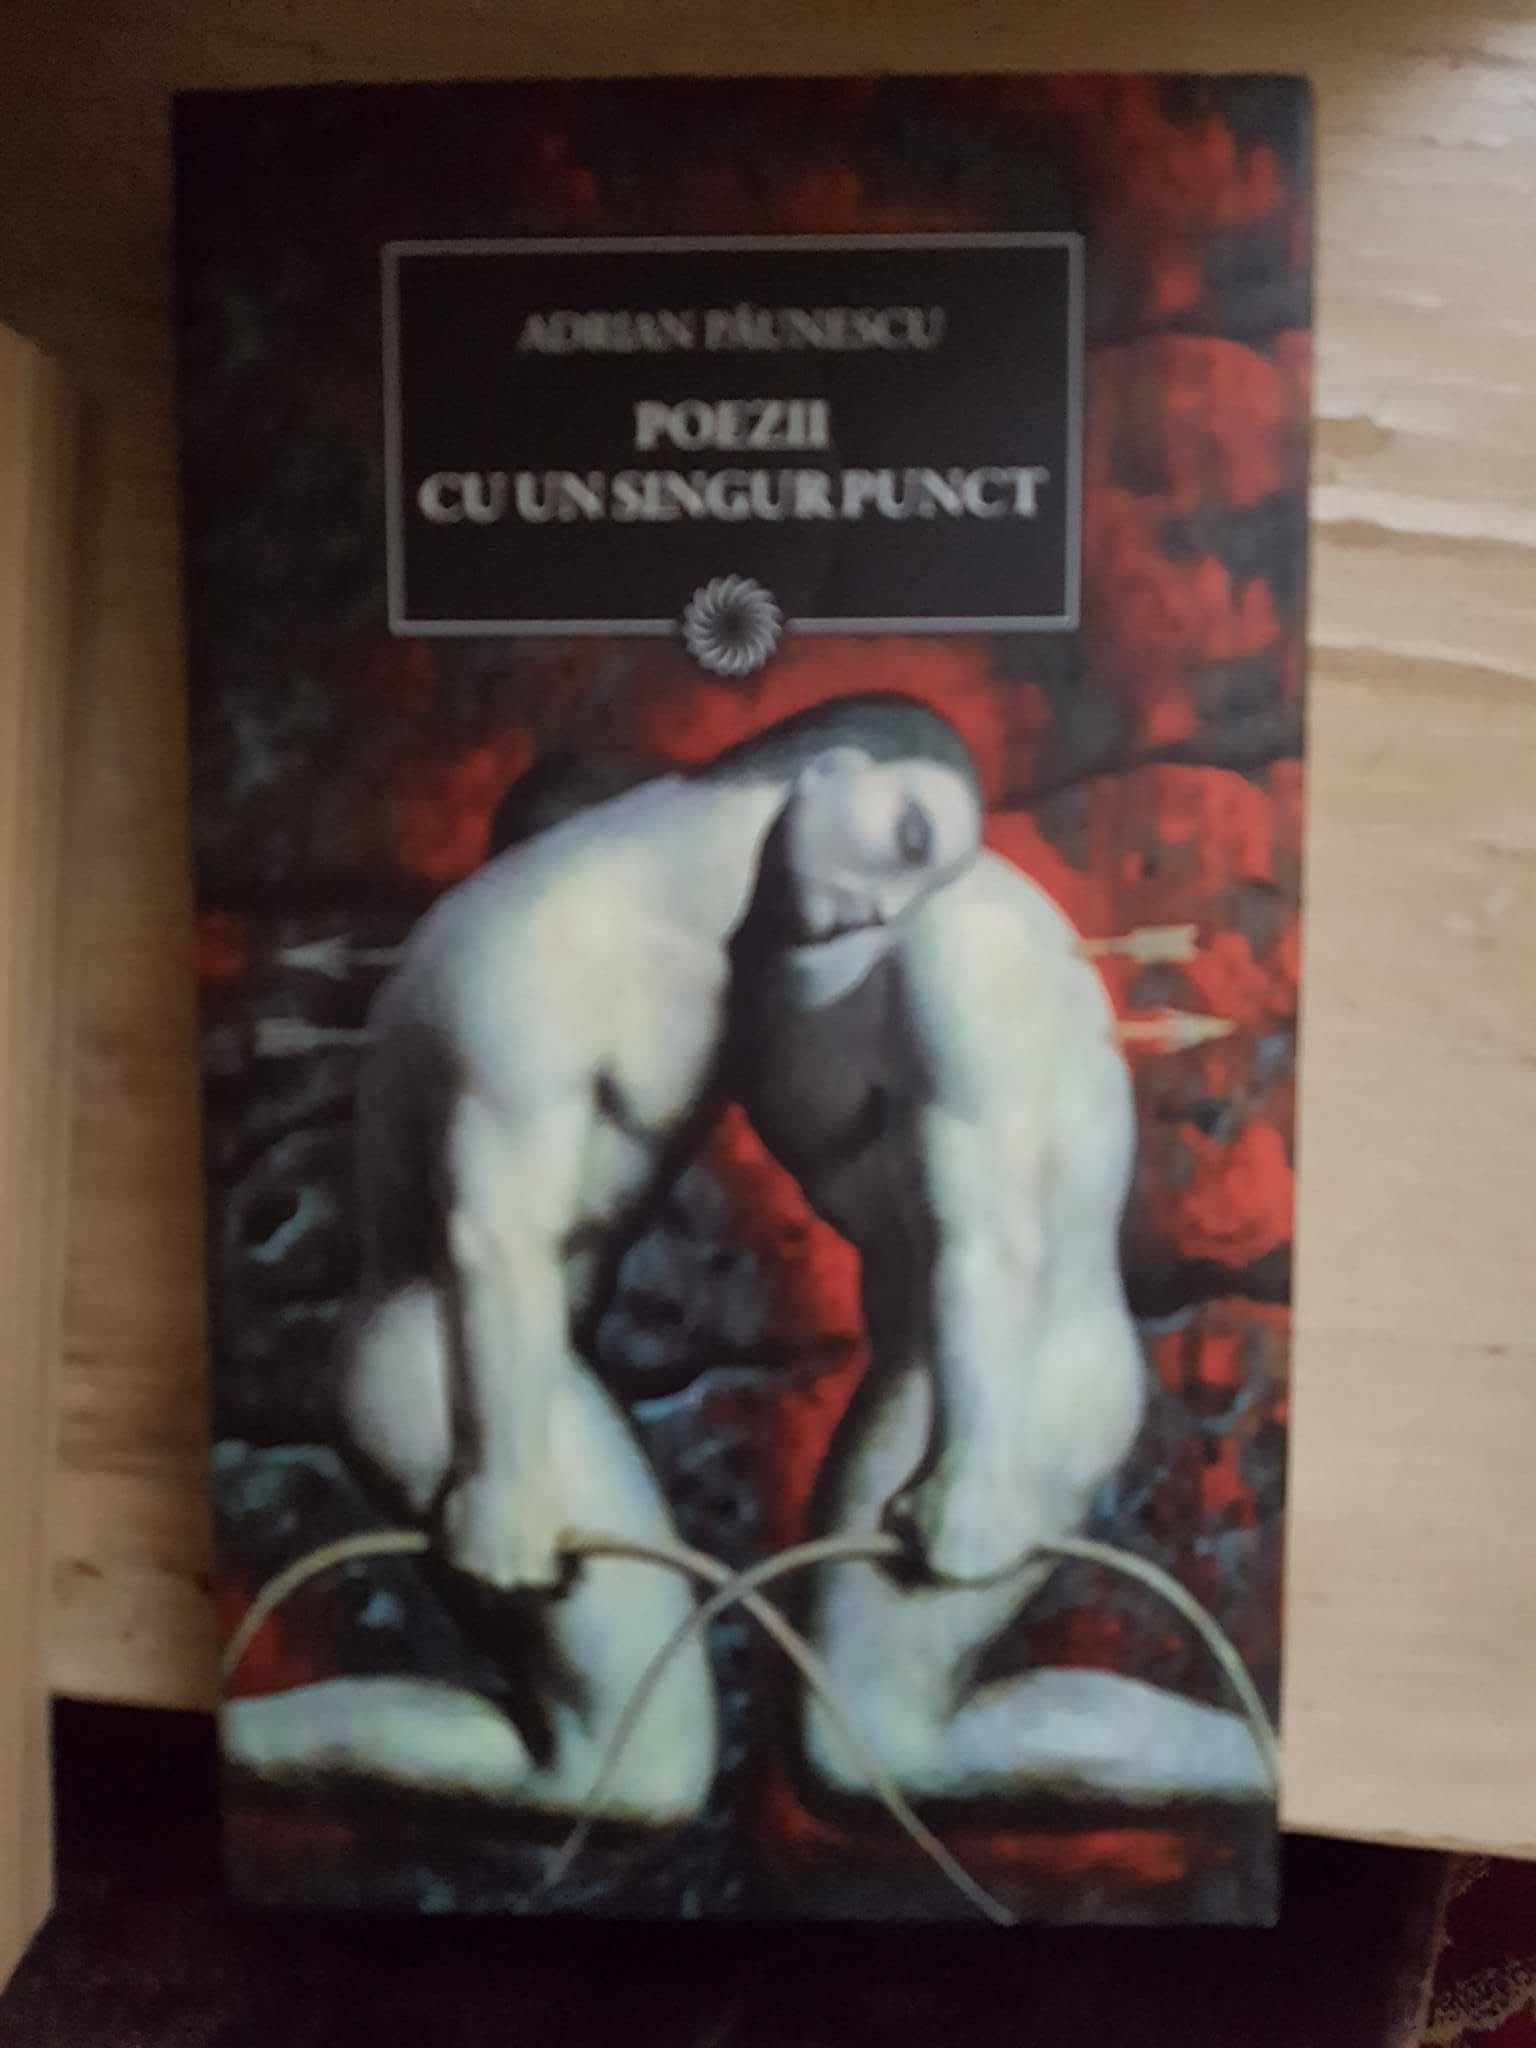 Adrian Paunescu- 15 Vol.Poezi cenzurate si Proza